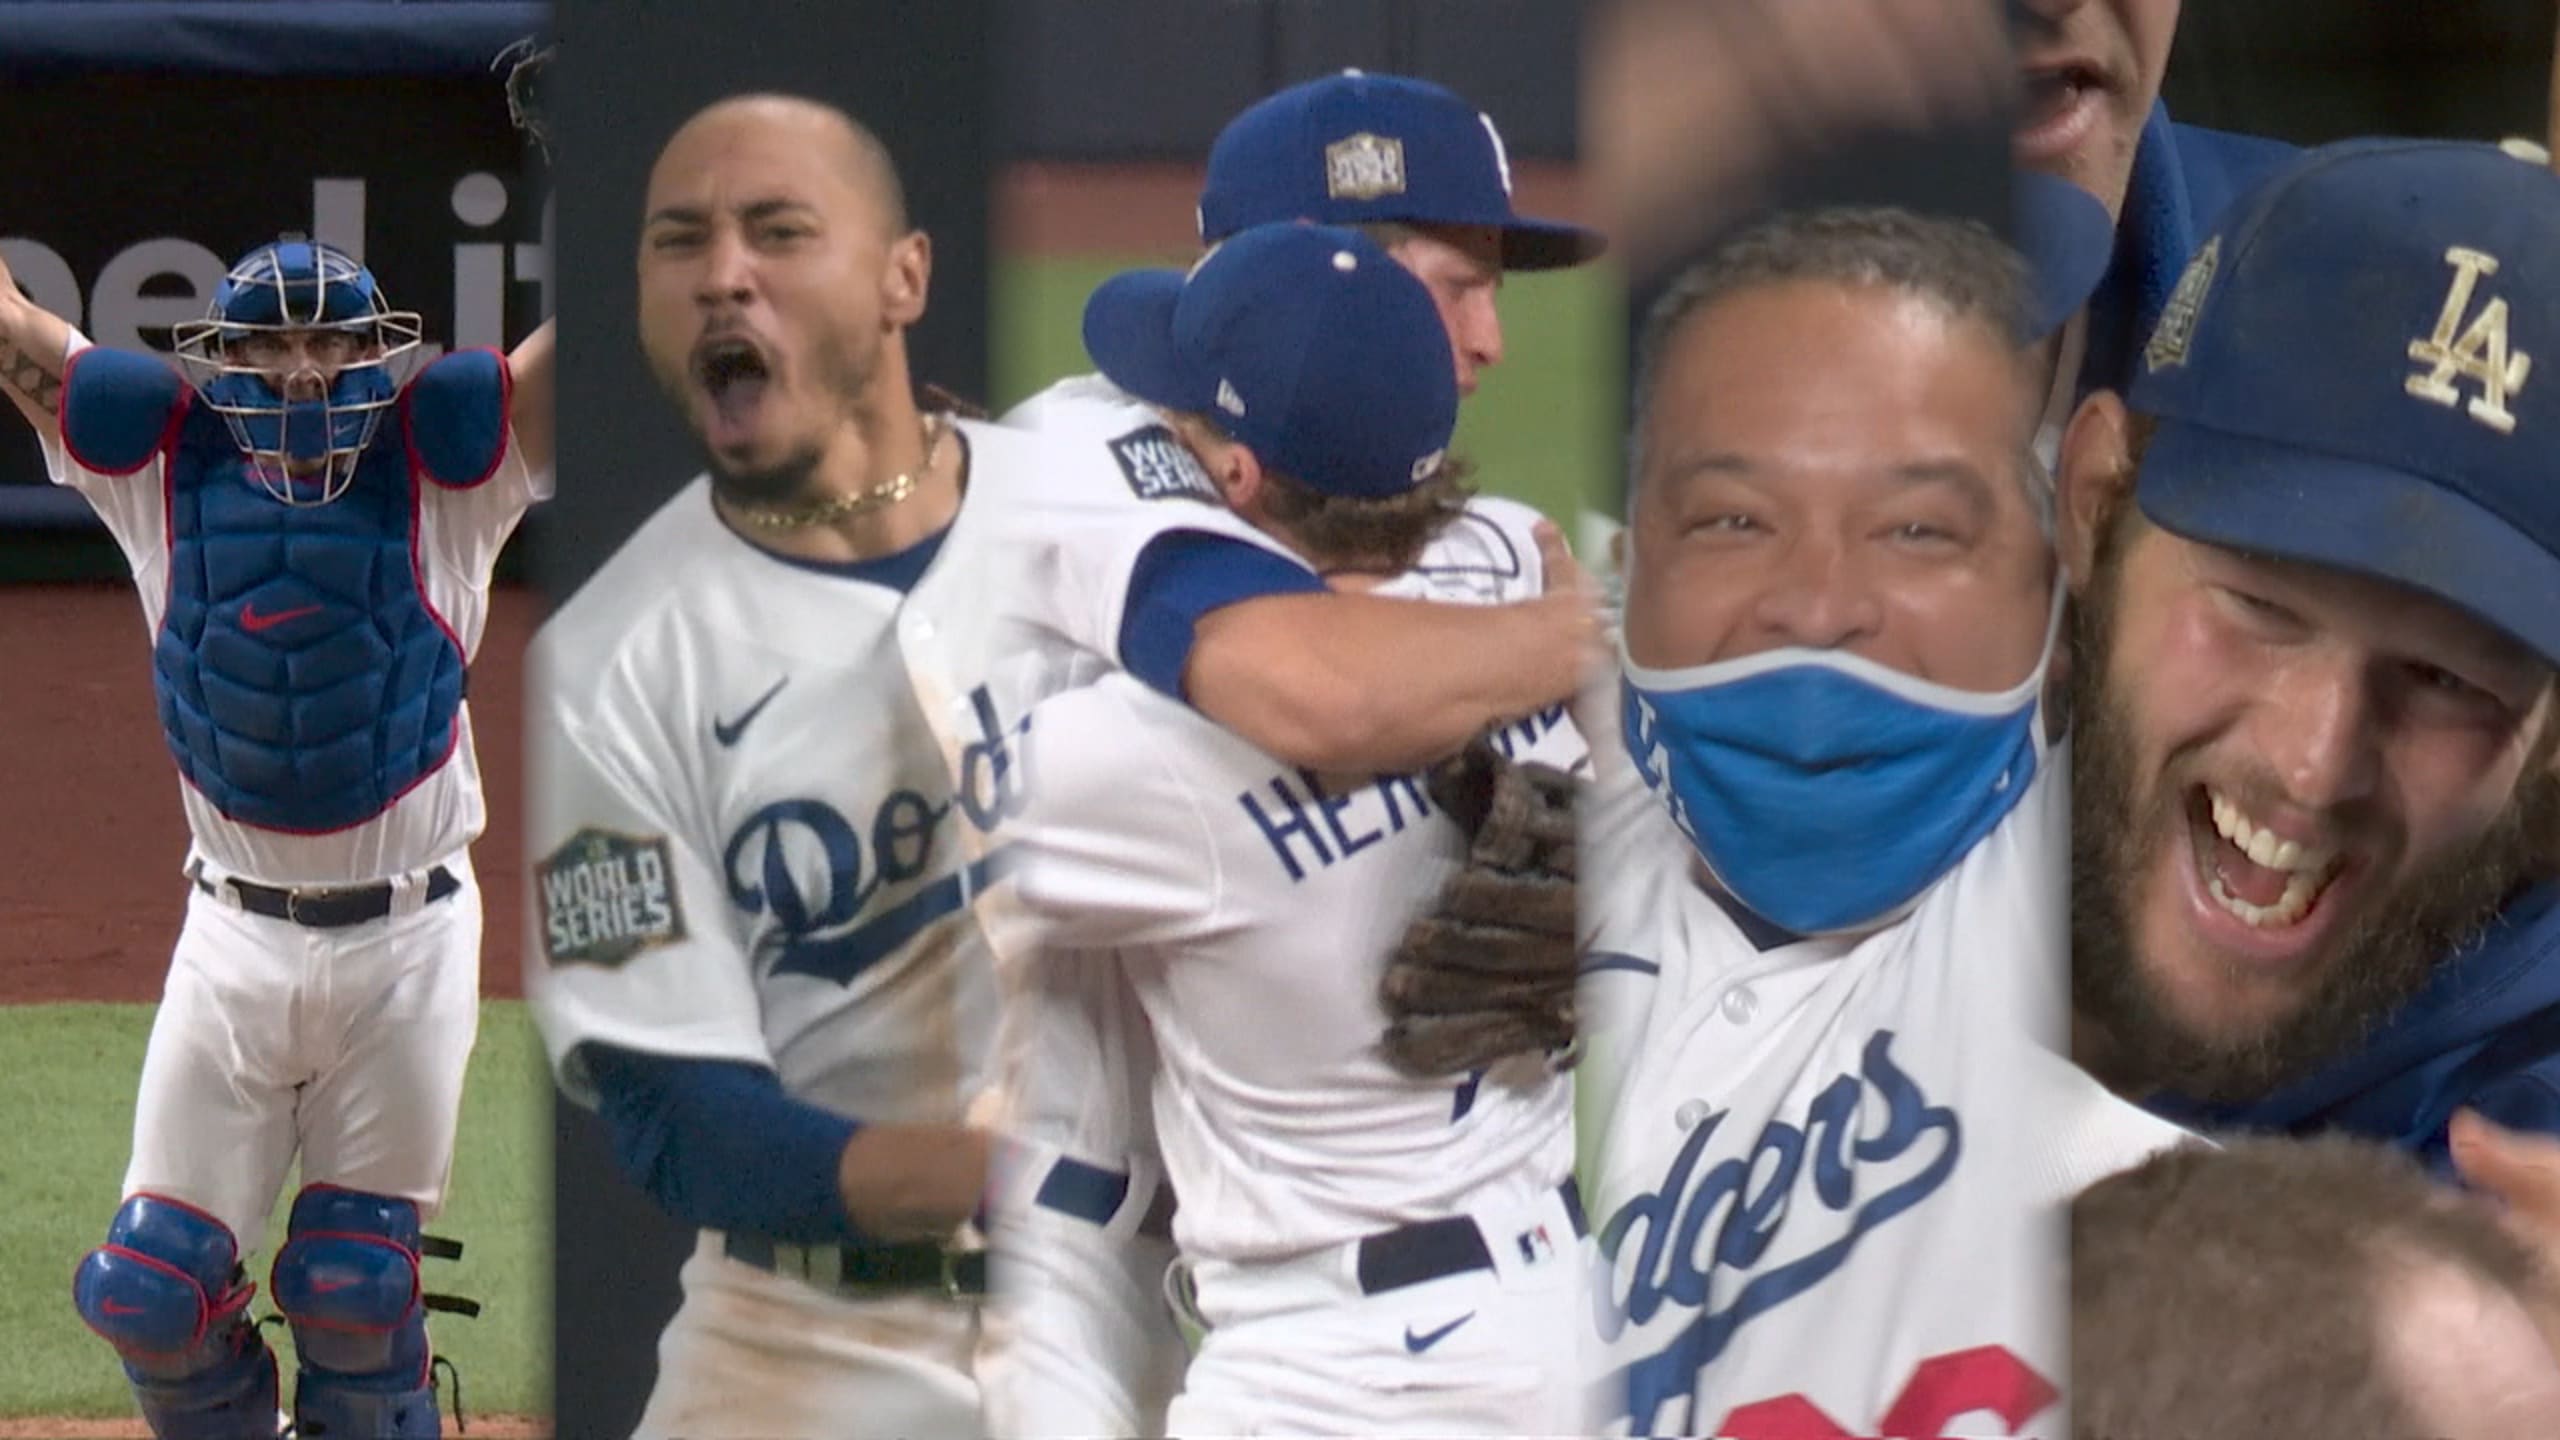 LA Kings - We're still celebrating that Los Angeles Dodgers win